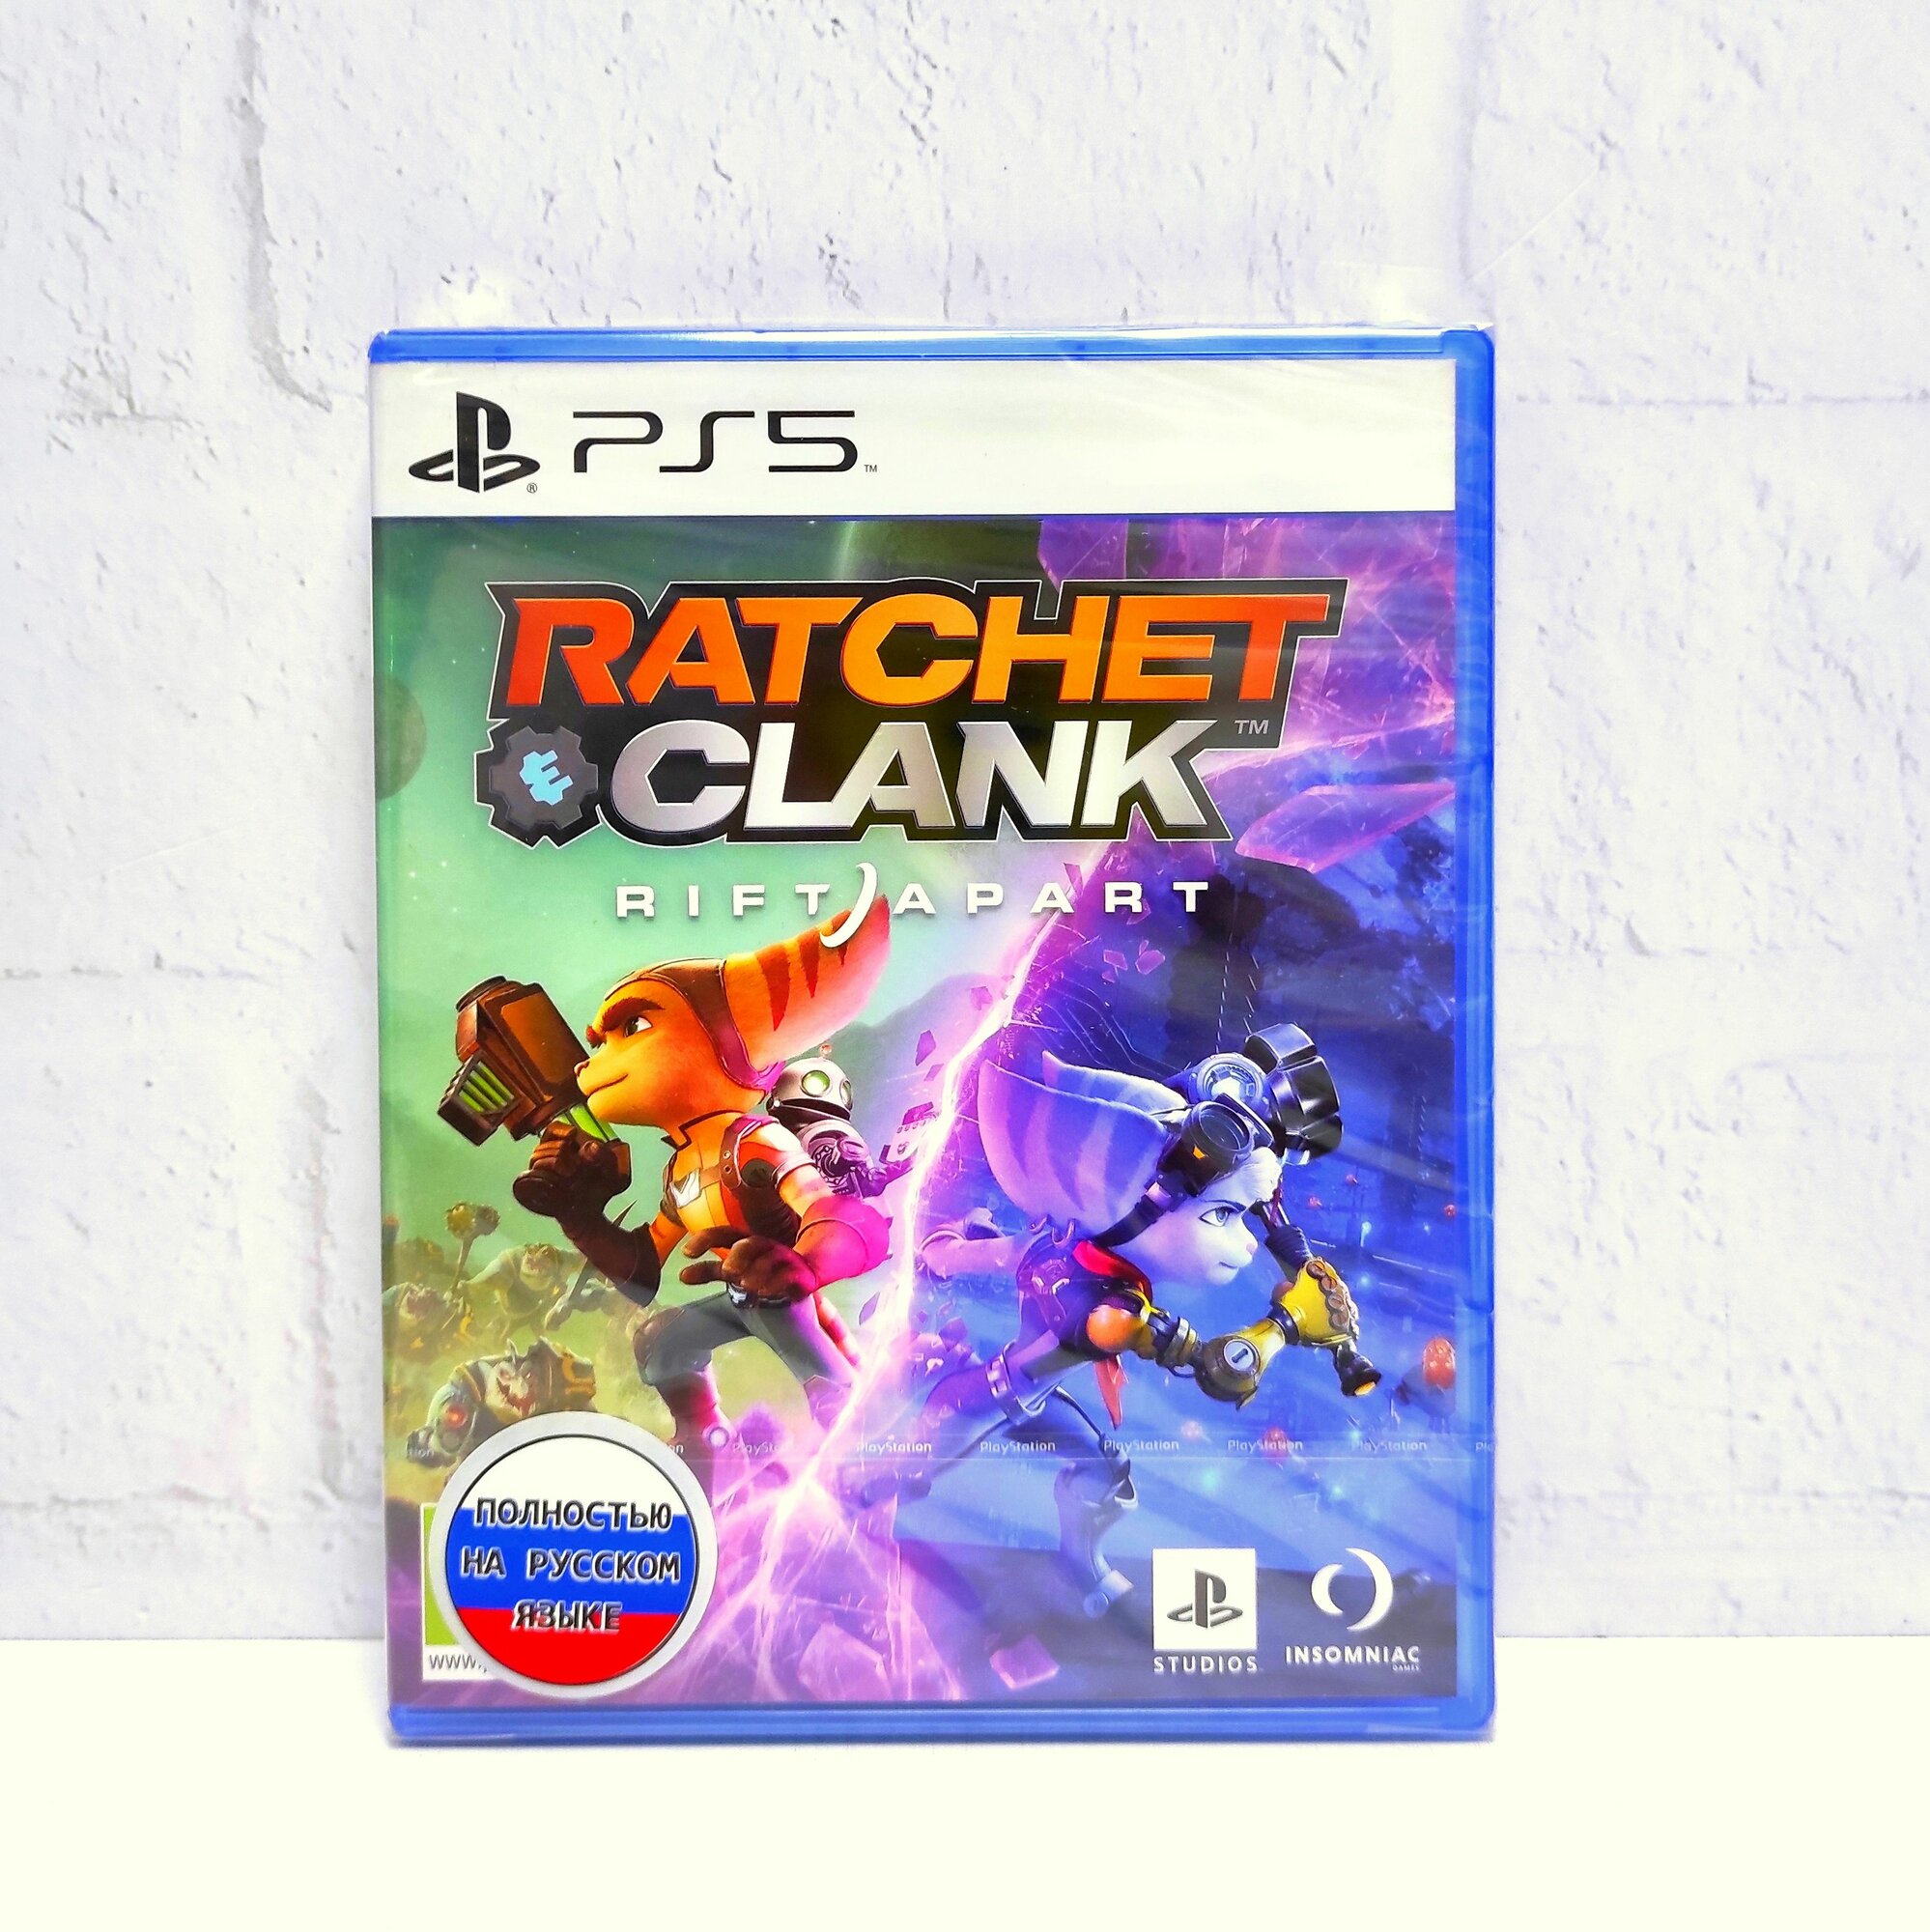 Ratchet & Clank Сквозь Миры Rift Apart Полностью на русском Видеоигра на диске PS5